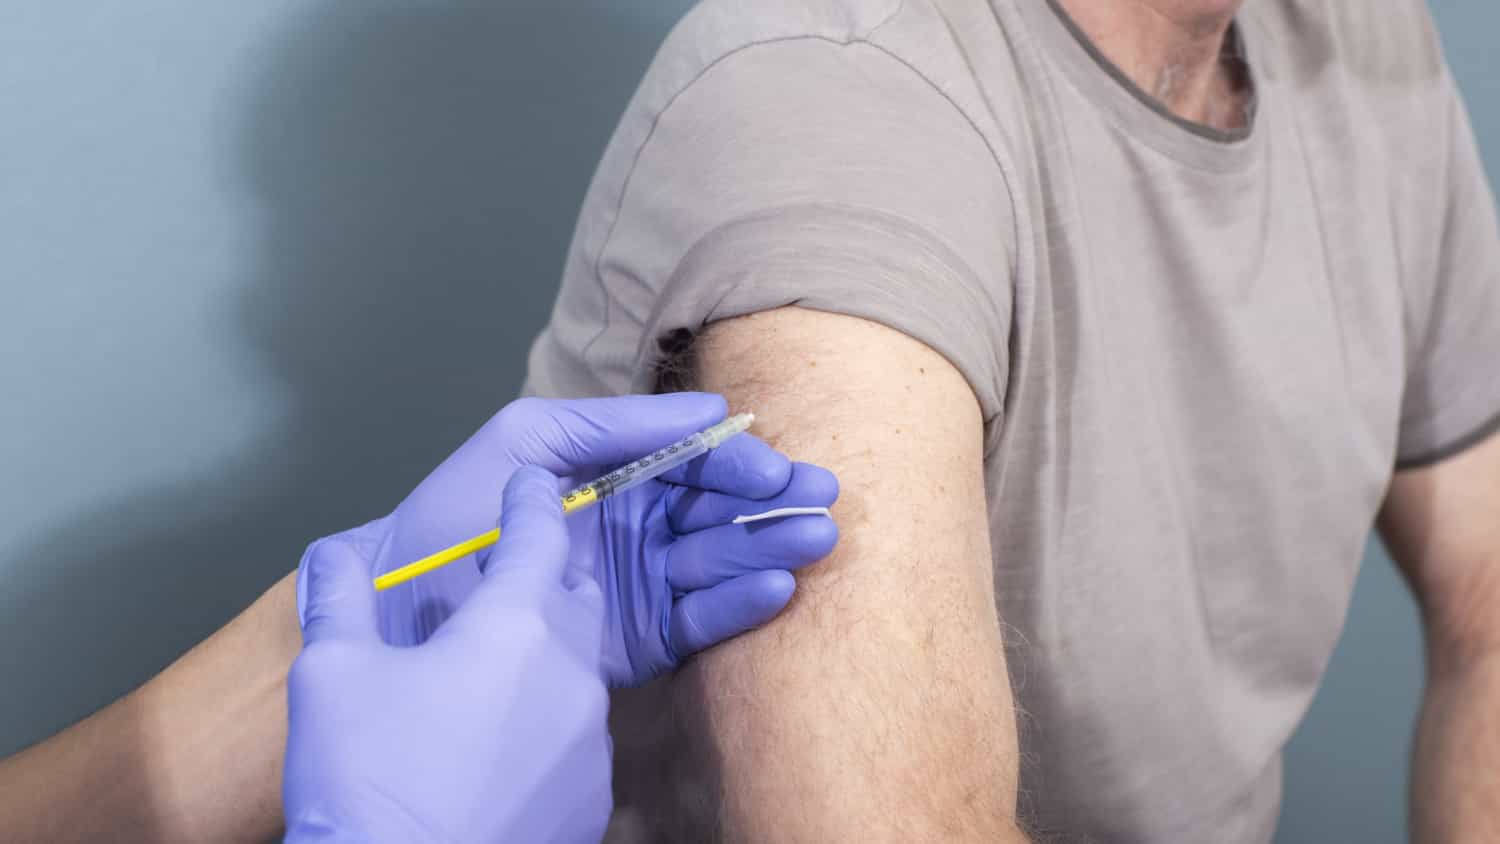 2回目のワクチンを打ってから12時間ほど経過。腕に痛みを感じる